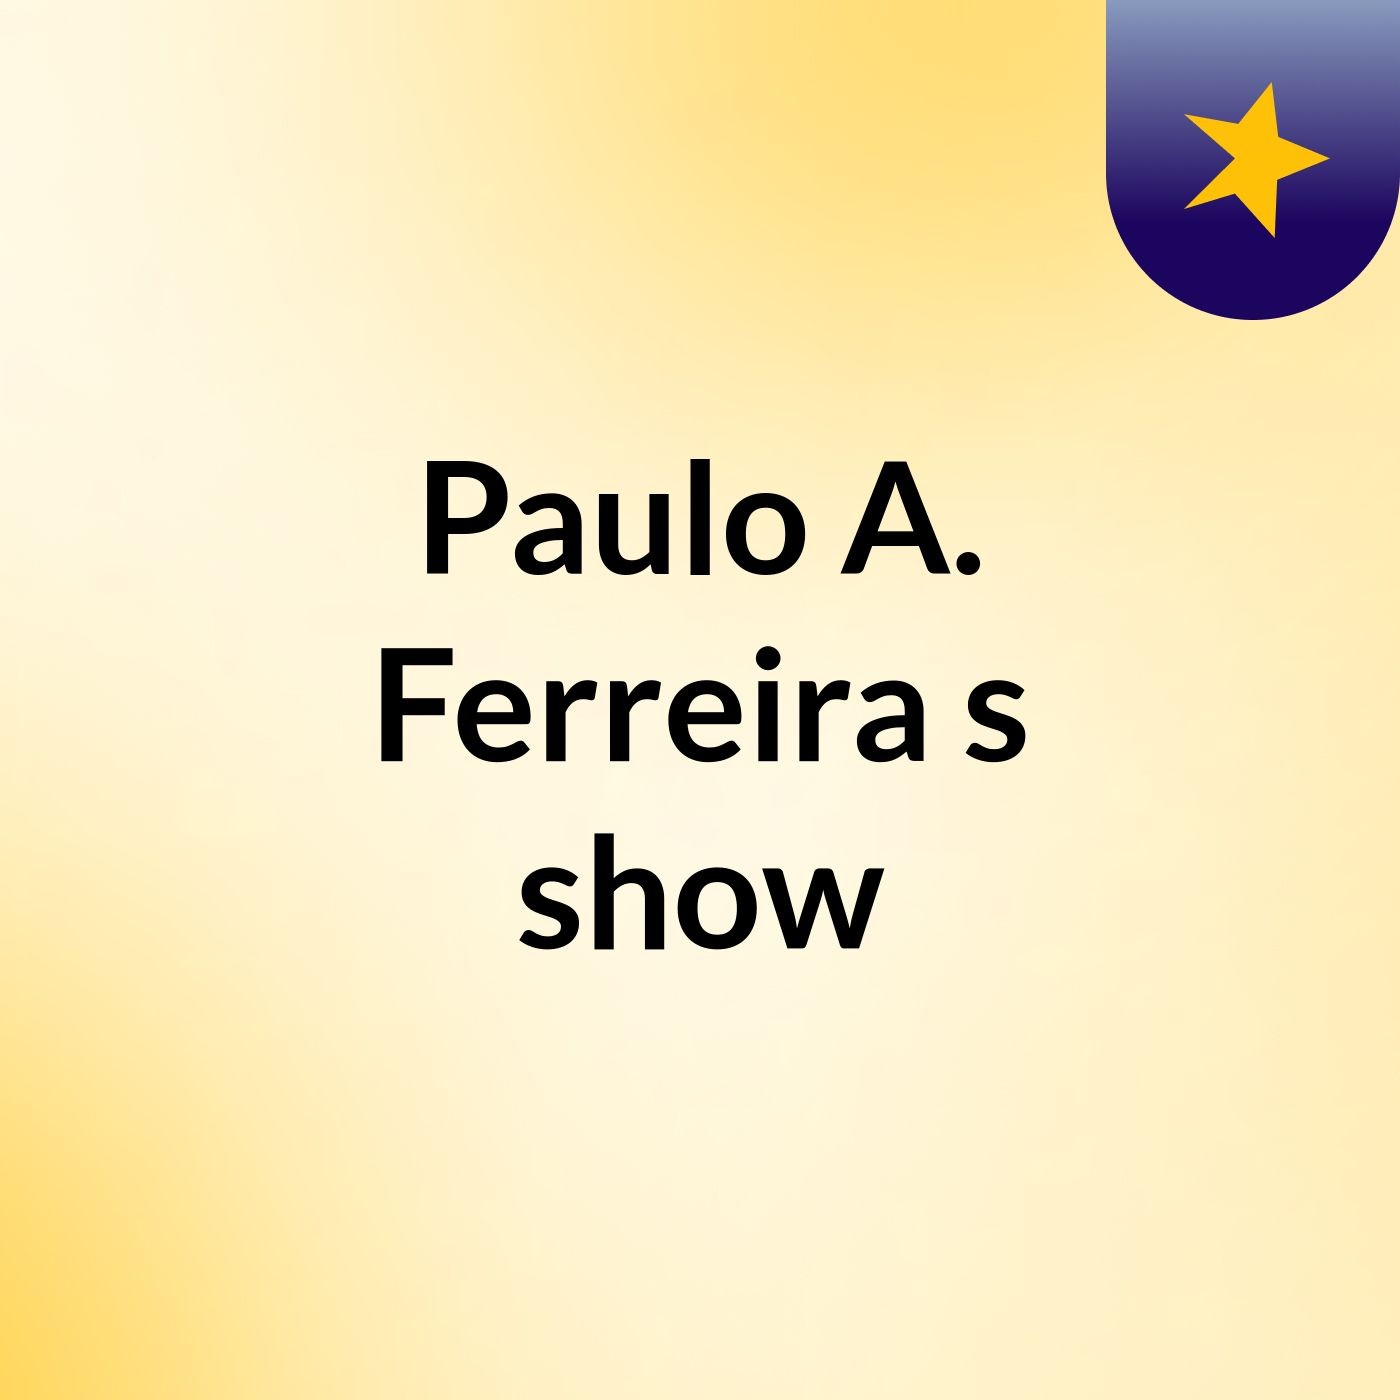 Paulo A. Ferreira's show